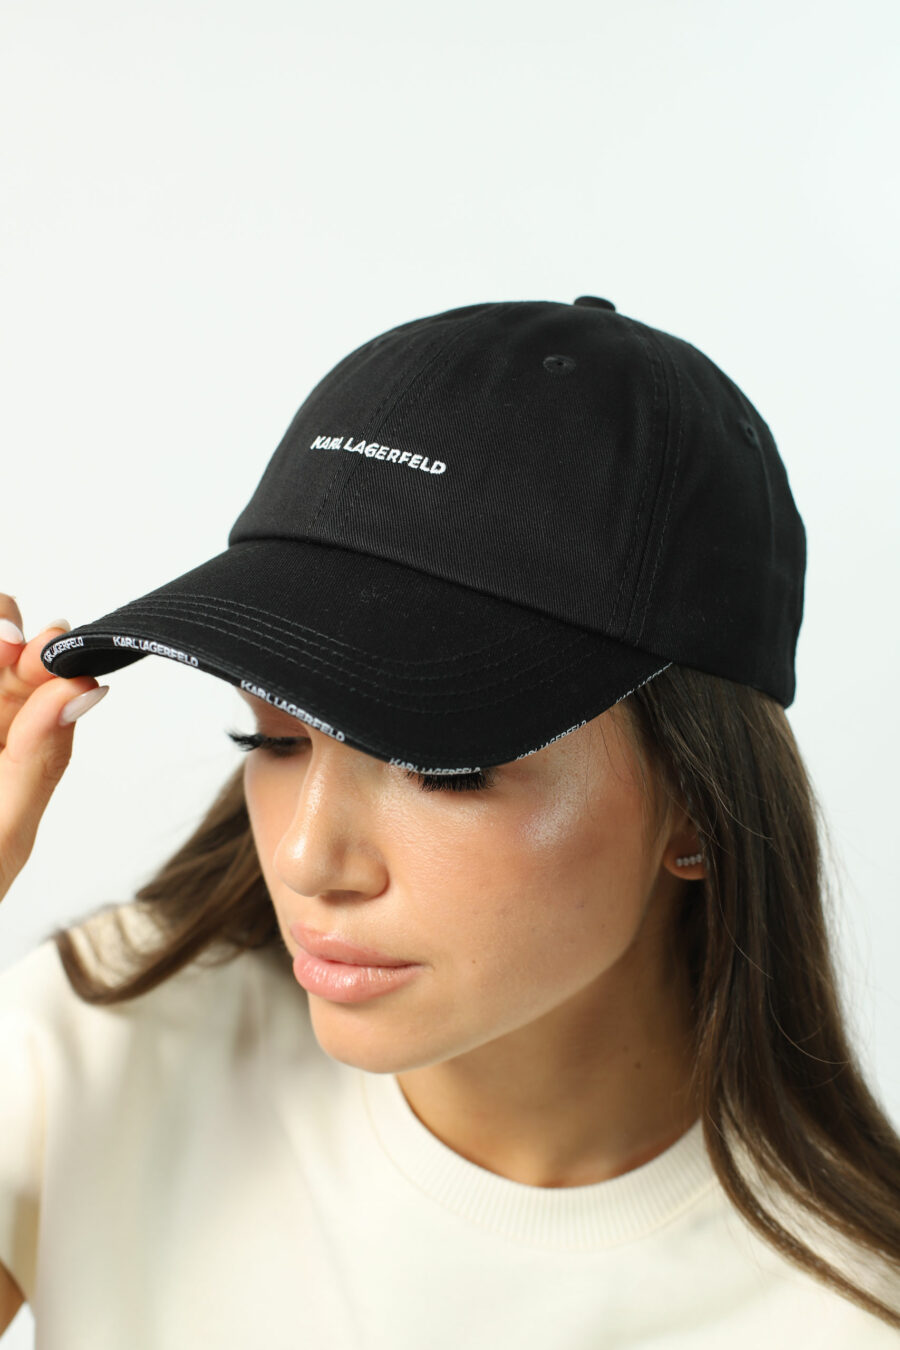 Gorra negra con logo en la visera "essential" - Photos 2758